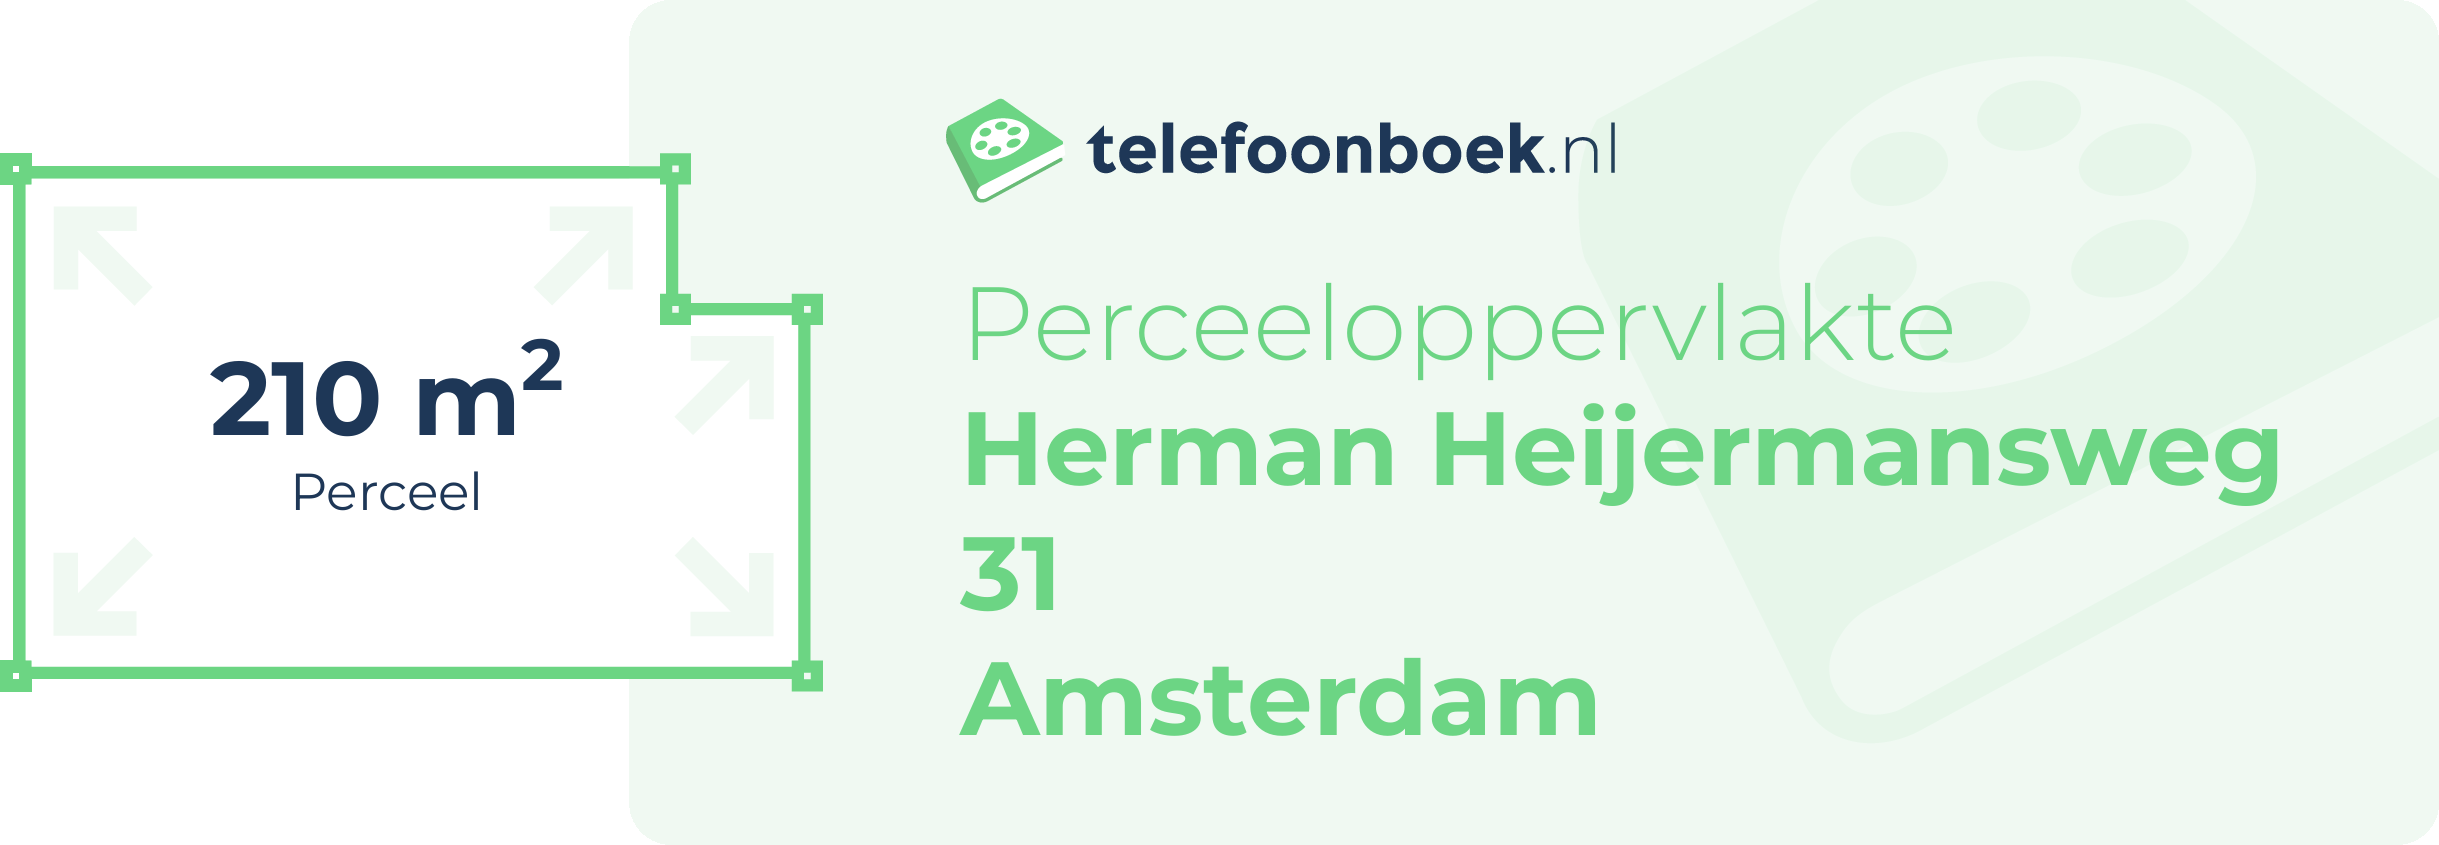 Perceeloppervlakte Herman Heijermansweg 31 Amsterdam